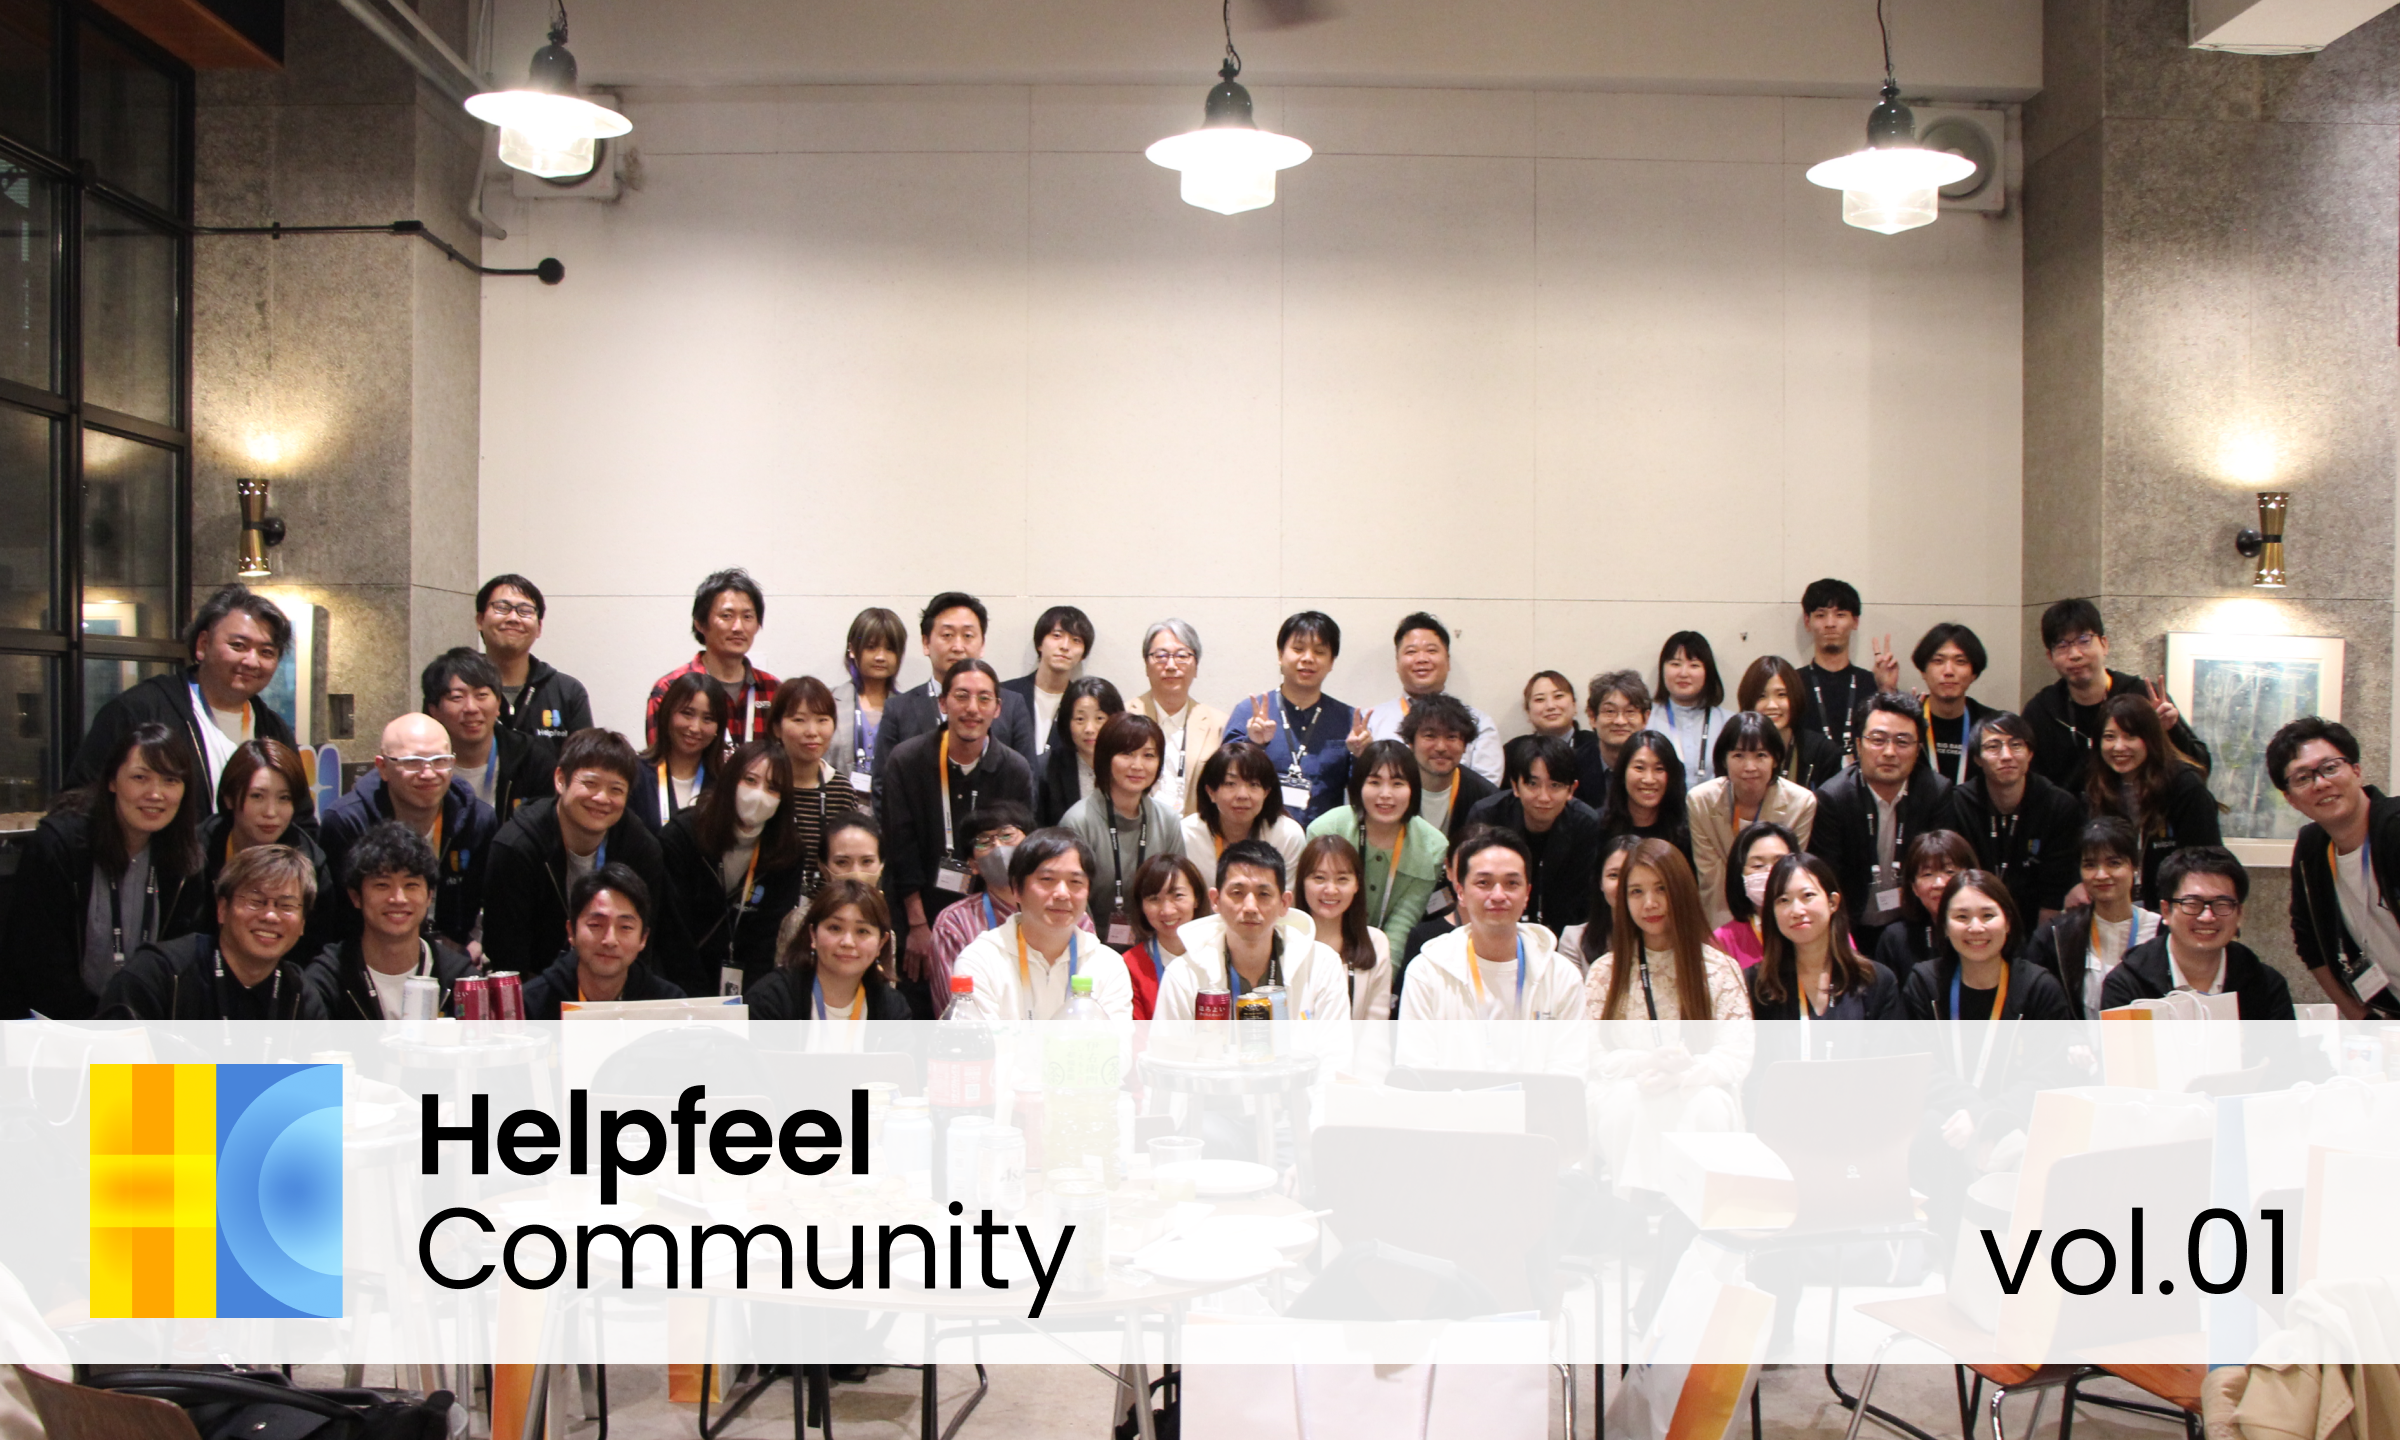 ユーザー同士の知見や経験を持ち寄って、広げる場に。「Helpfeel Community」の設立と第1回開催レポート